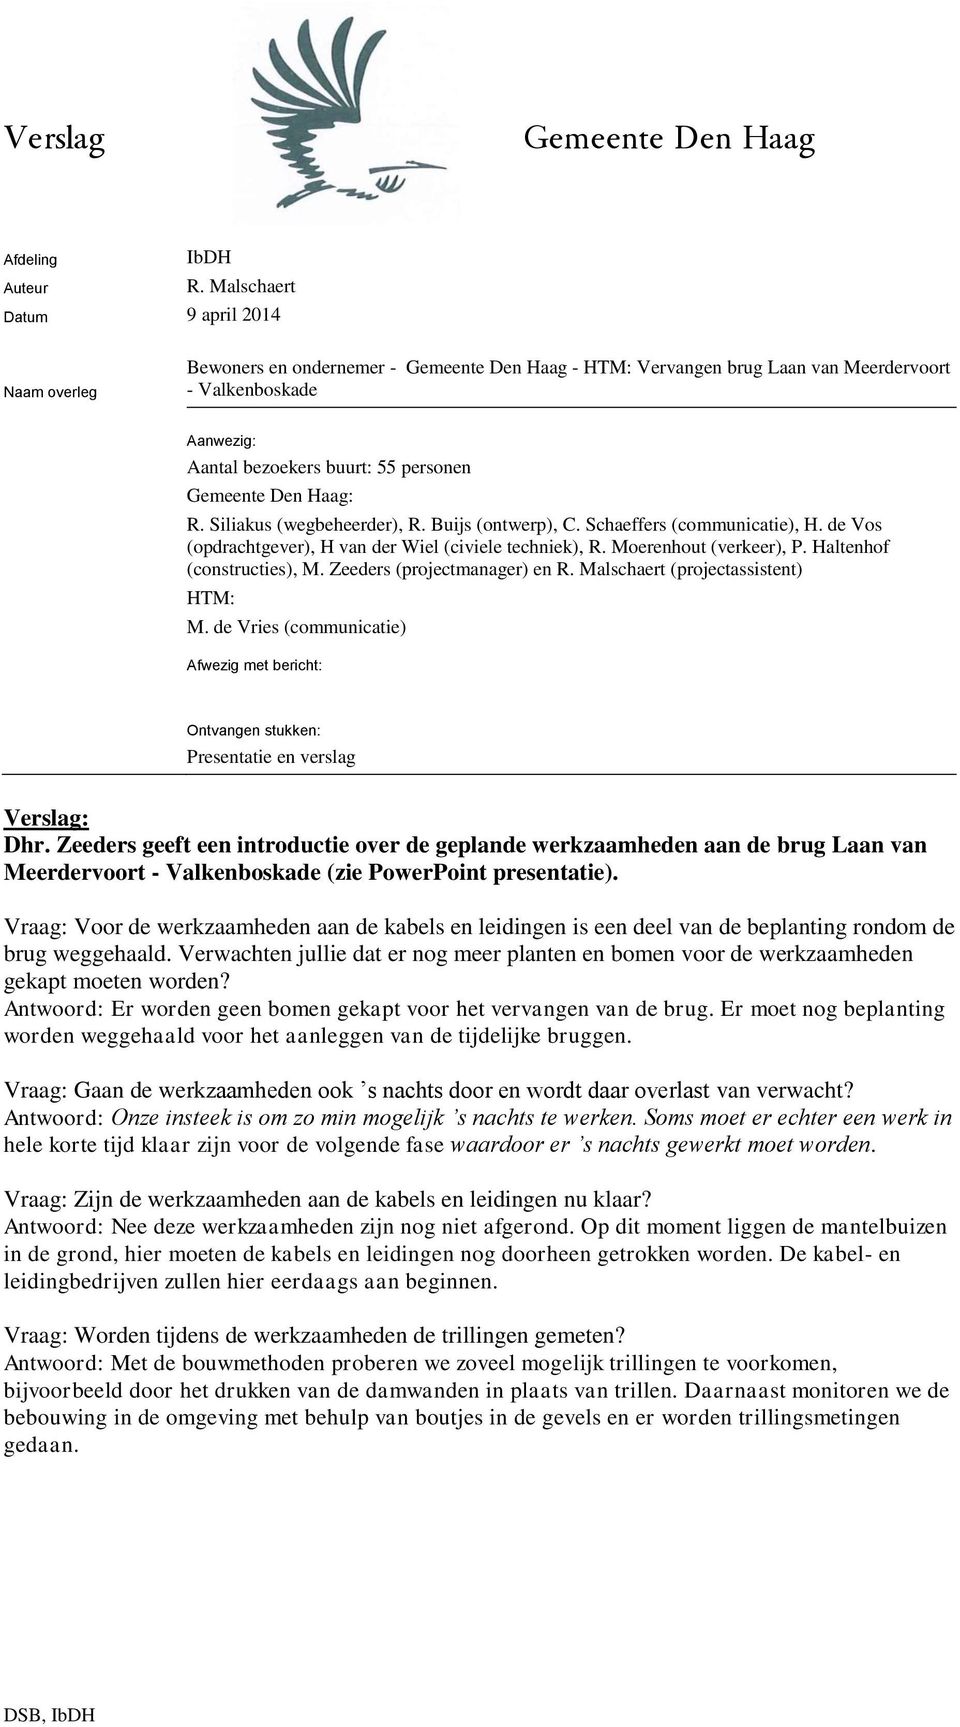 Gemeente Den Haag: R. Siliakus (wegbeheerder), R. Buijs (ontwerp), C. Schaeffers (communicatie), H. de Vos (opdrachtgever), H van der Wiel (civiele techniek), R. Moerenhout (verkeer), P.